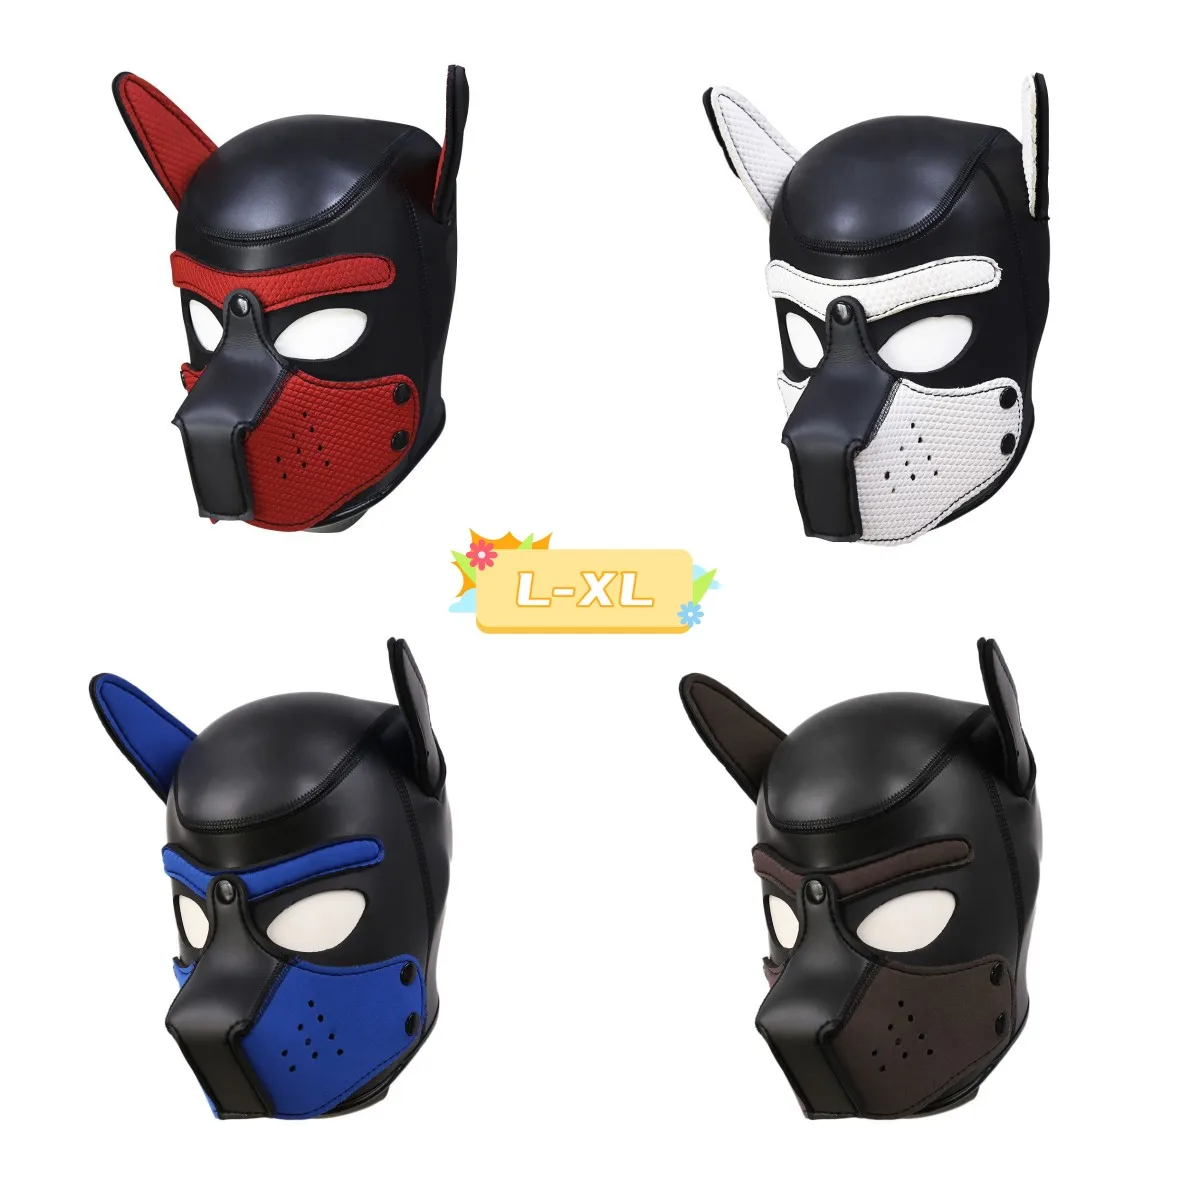 Extra Größe Tier Cosplay Kopf bedeckung Bühne Kostüm aus Gummi kopf 3 Löcher Abdeckung Gesichts maske mit Nase für CS Spiel Halloween Karneval